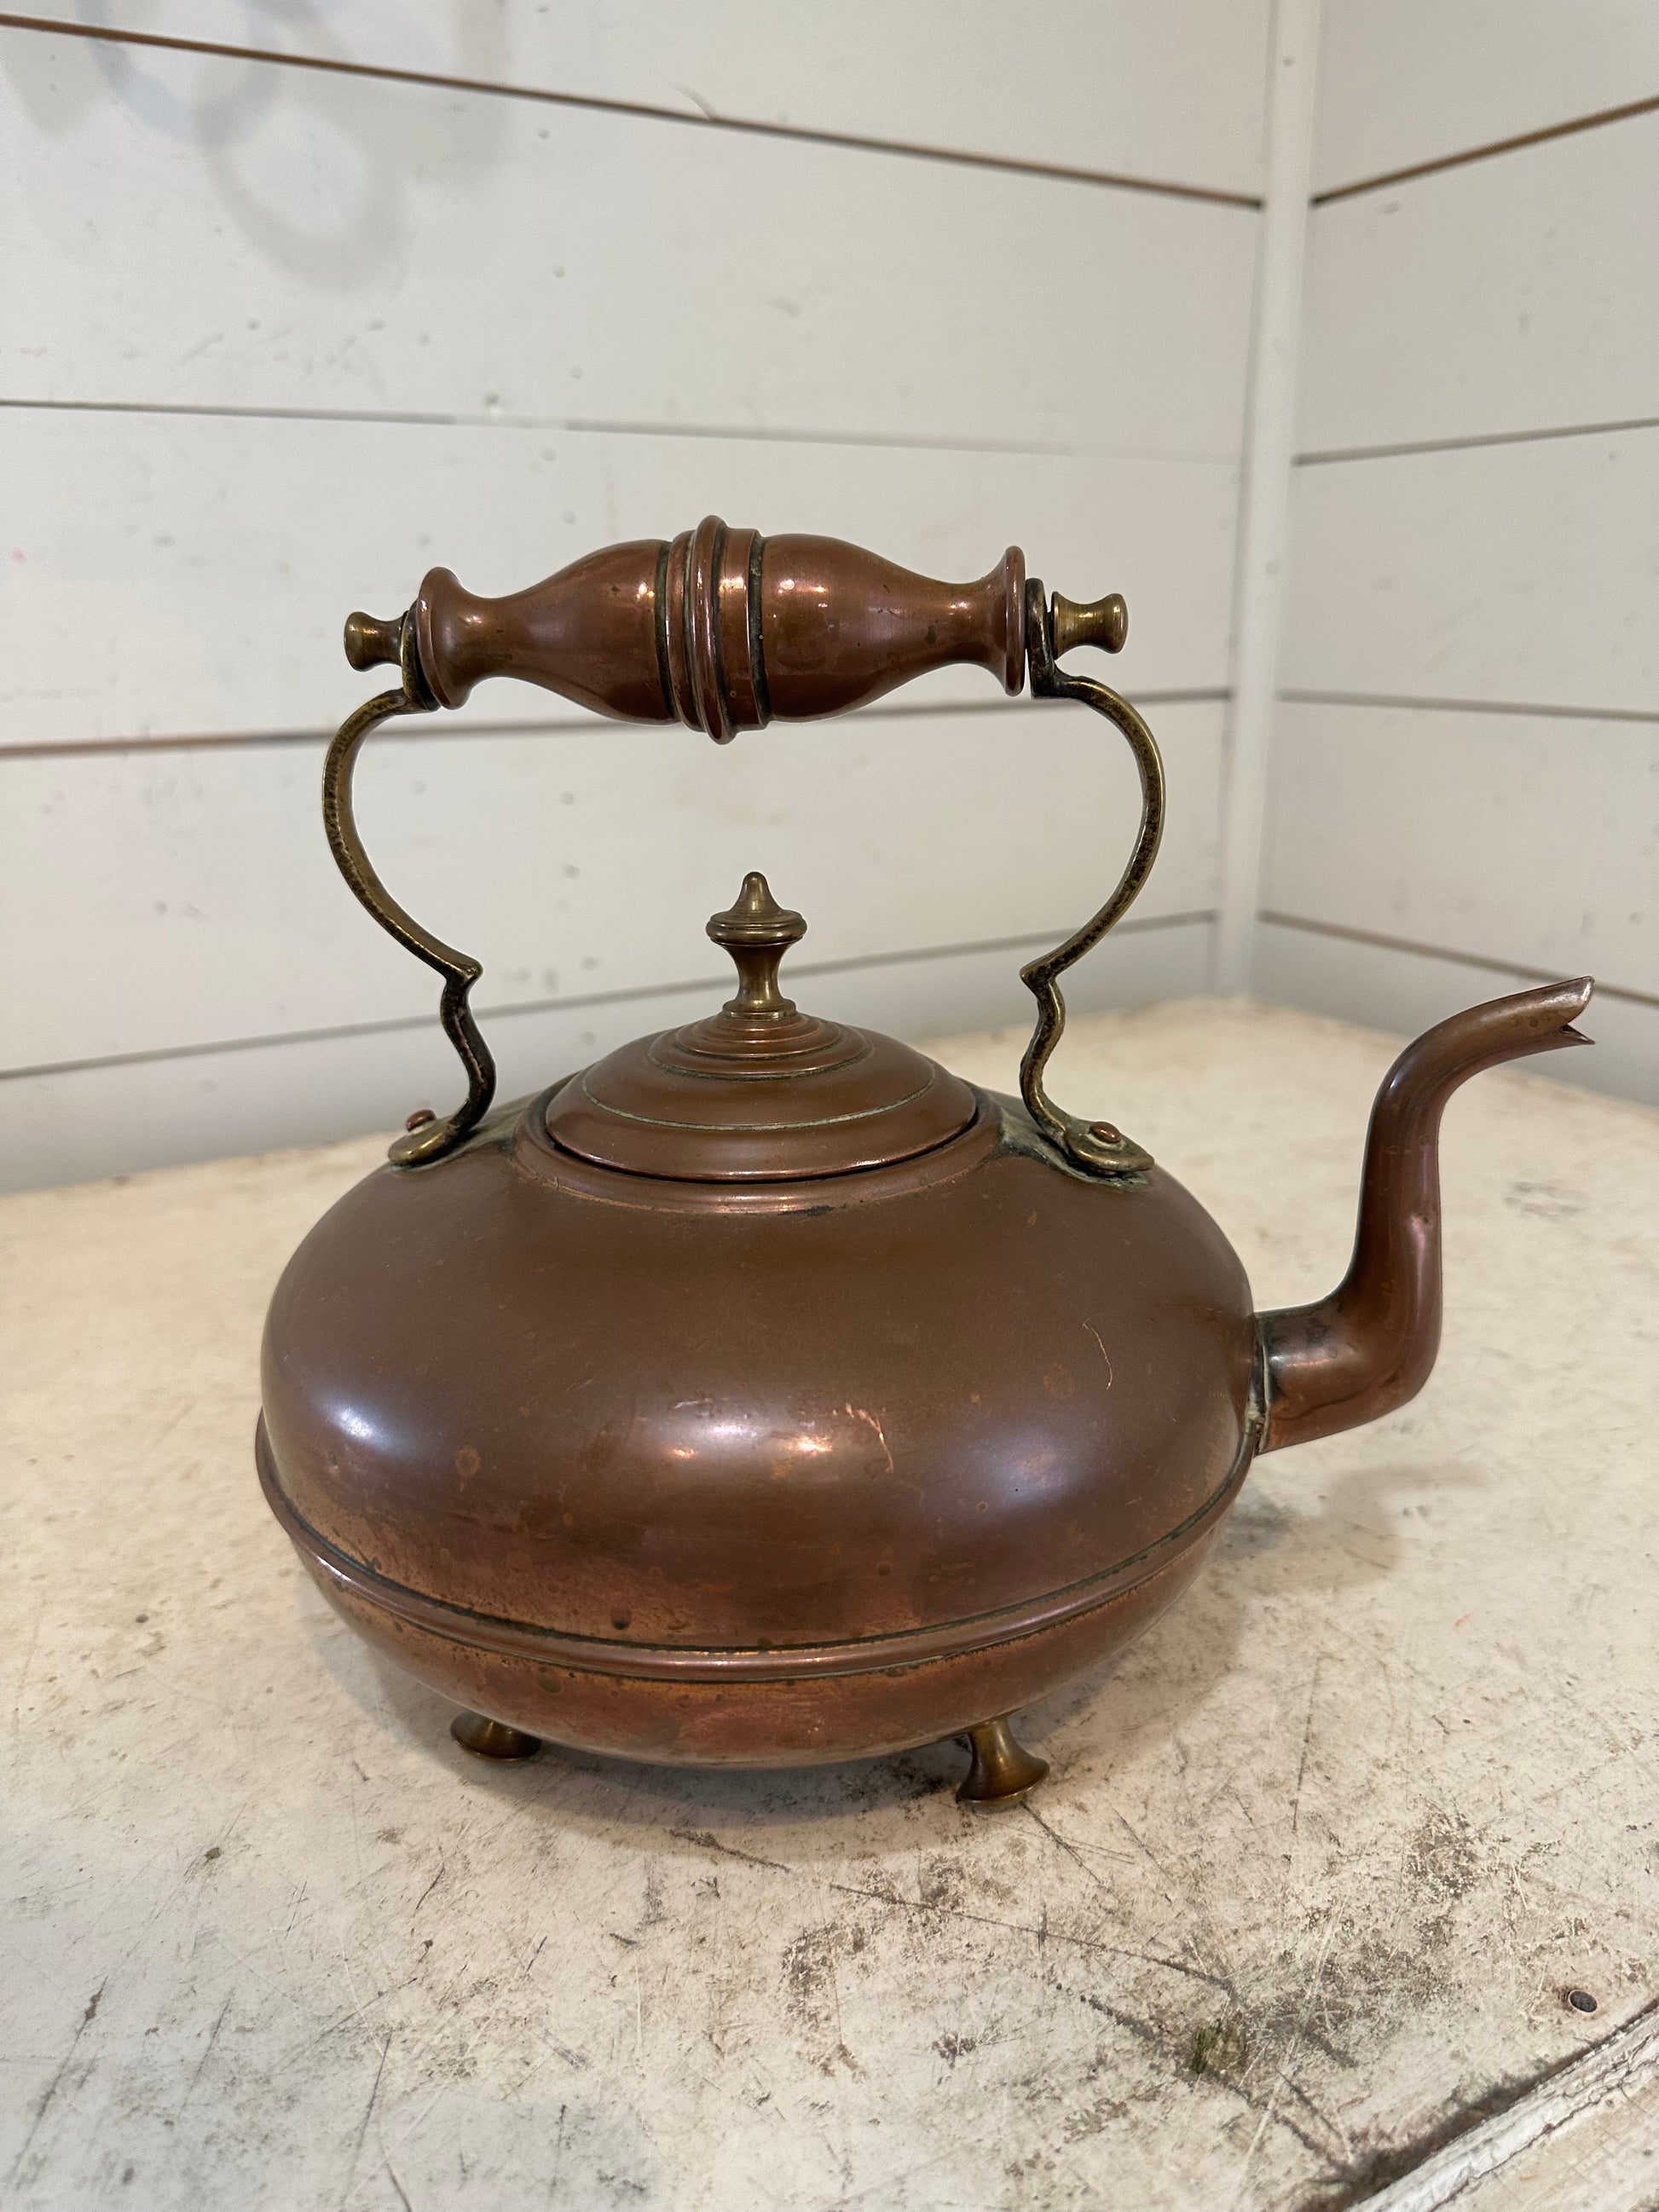 Copper Farmhouse Antique Wooden Handle Teapot or Kettle